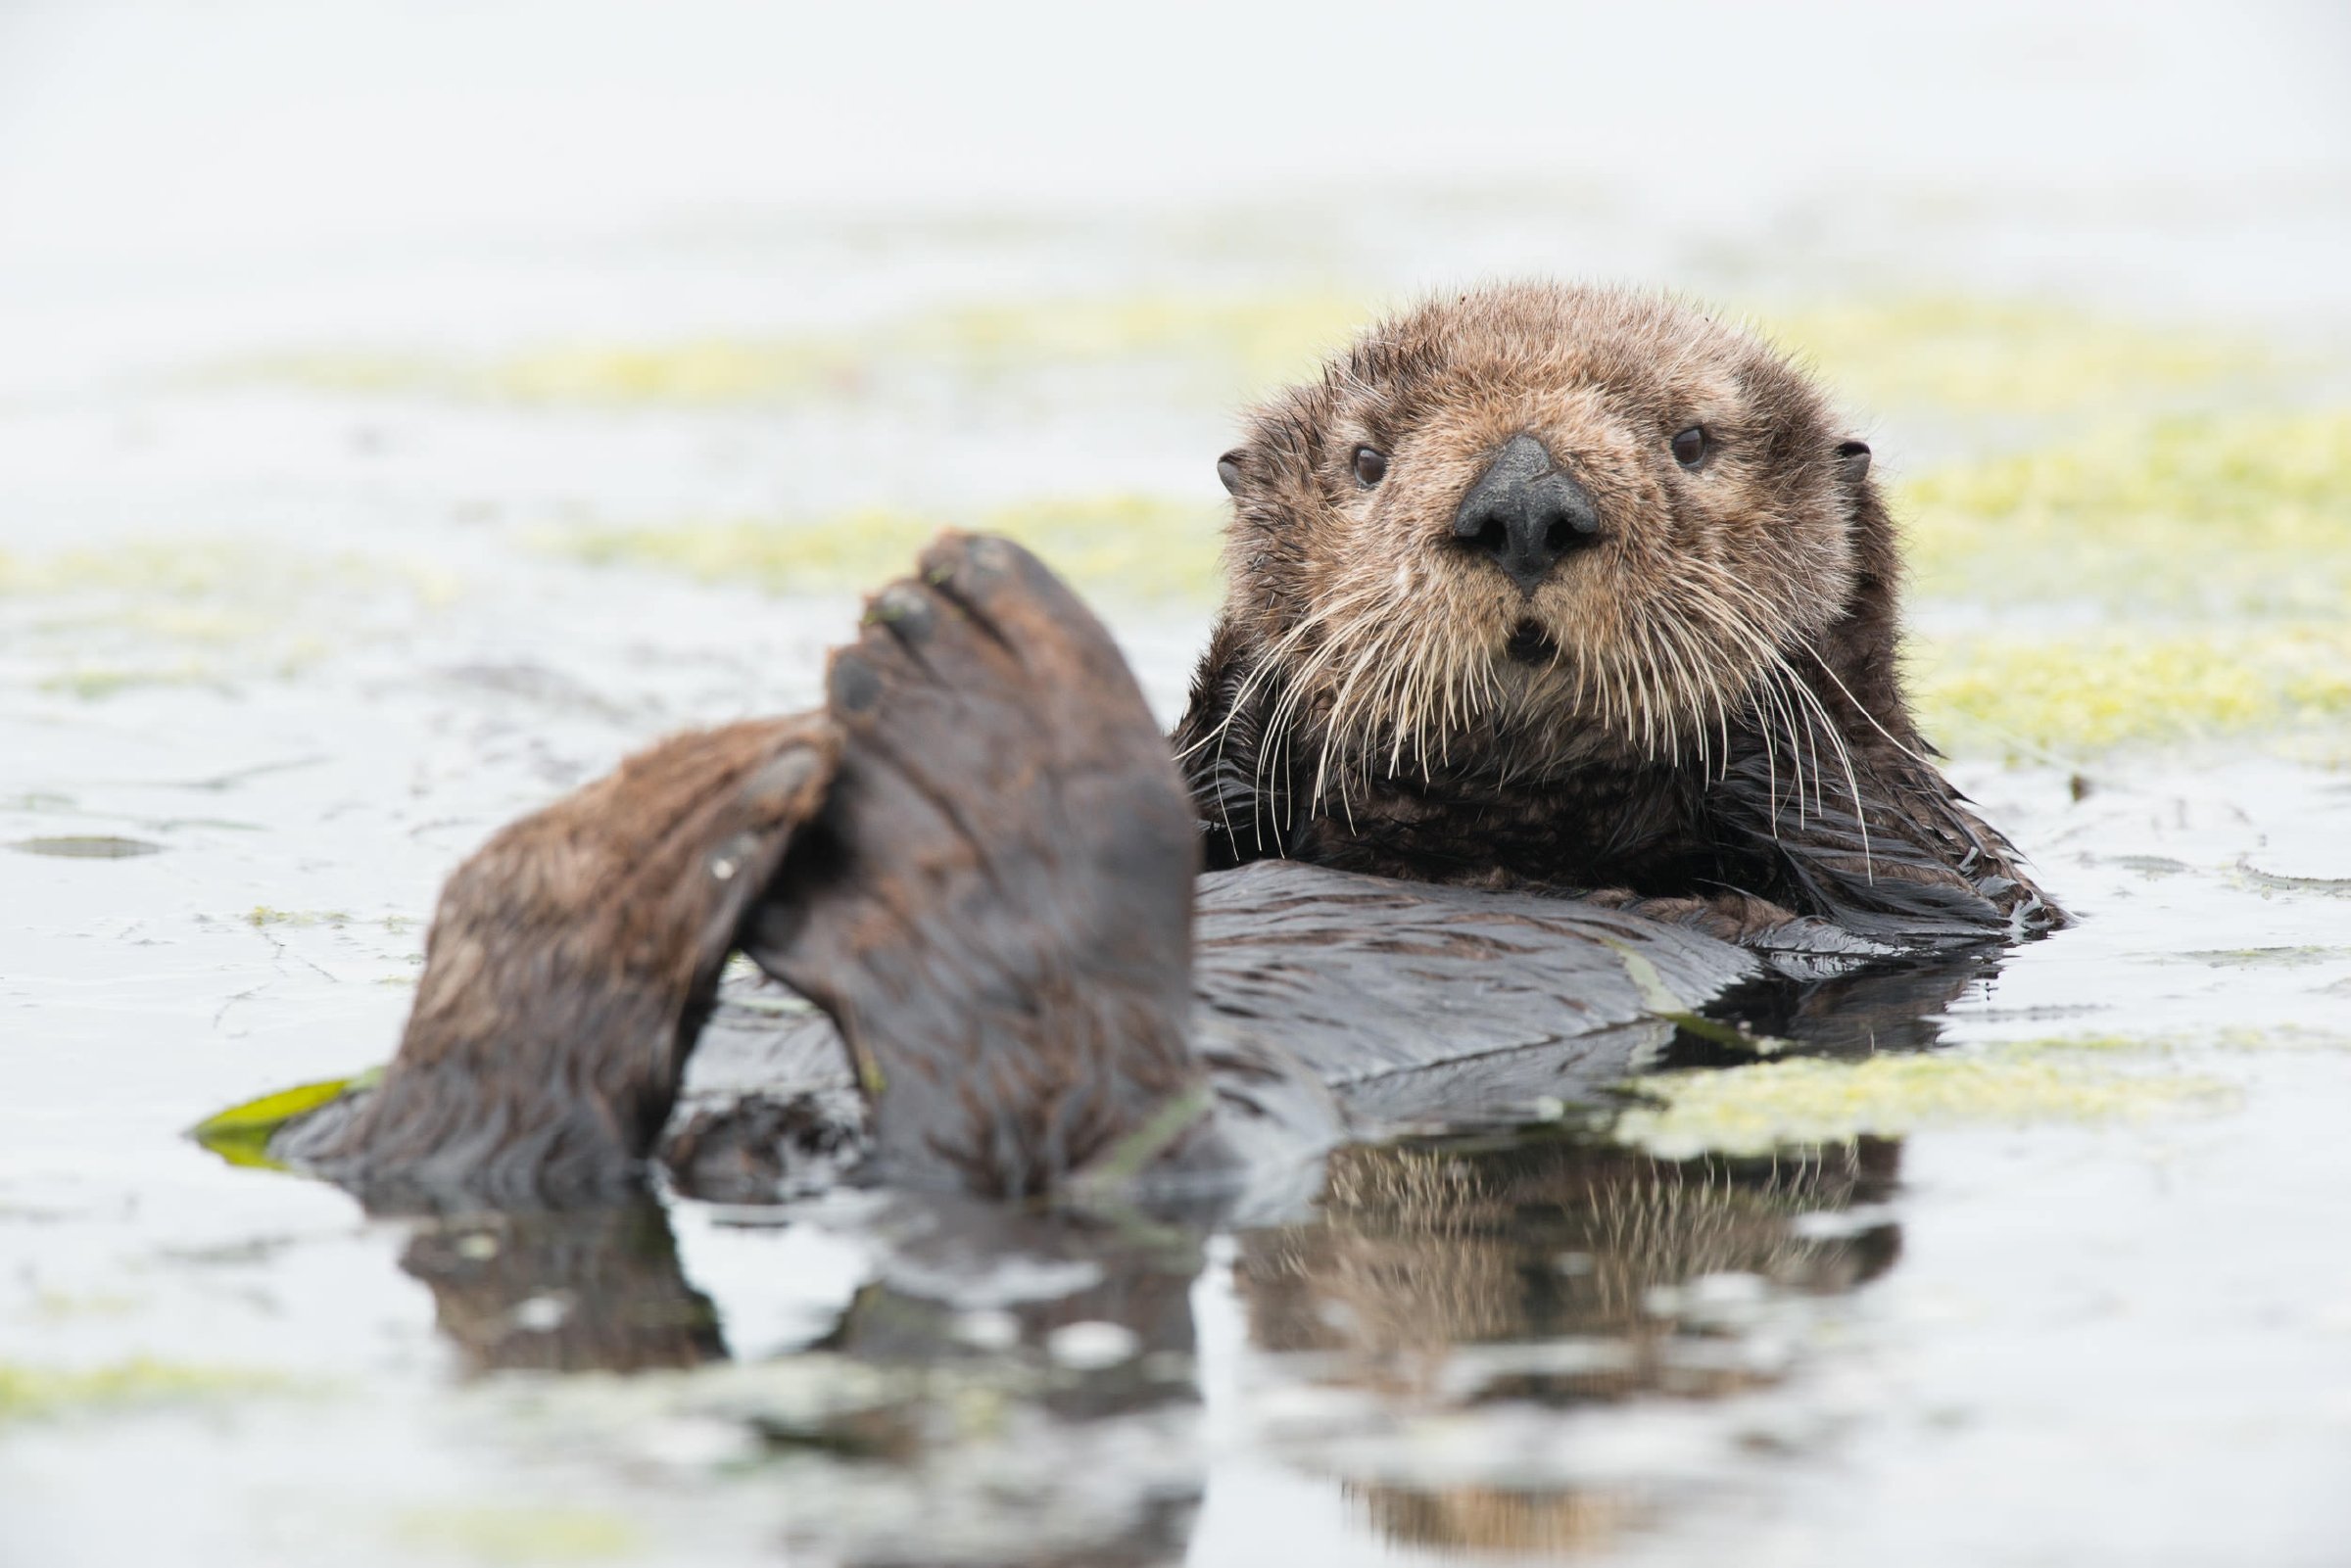 sea otter walking